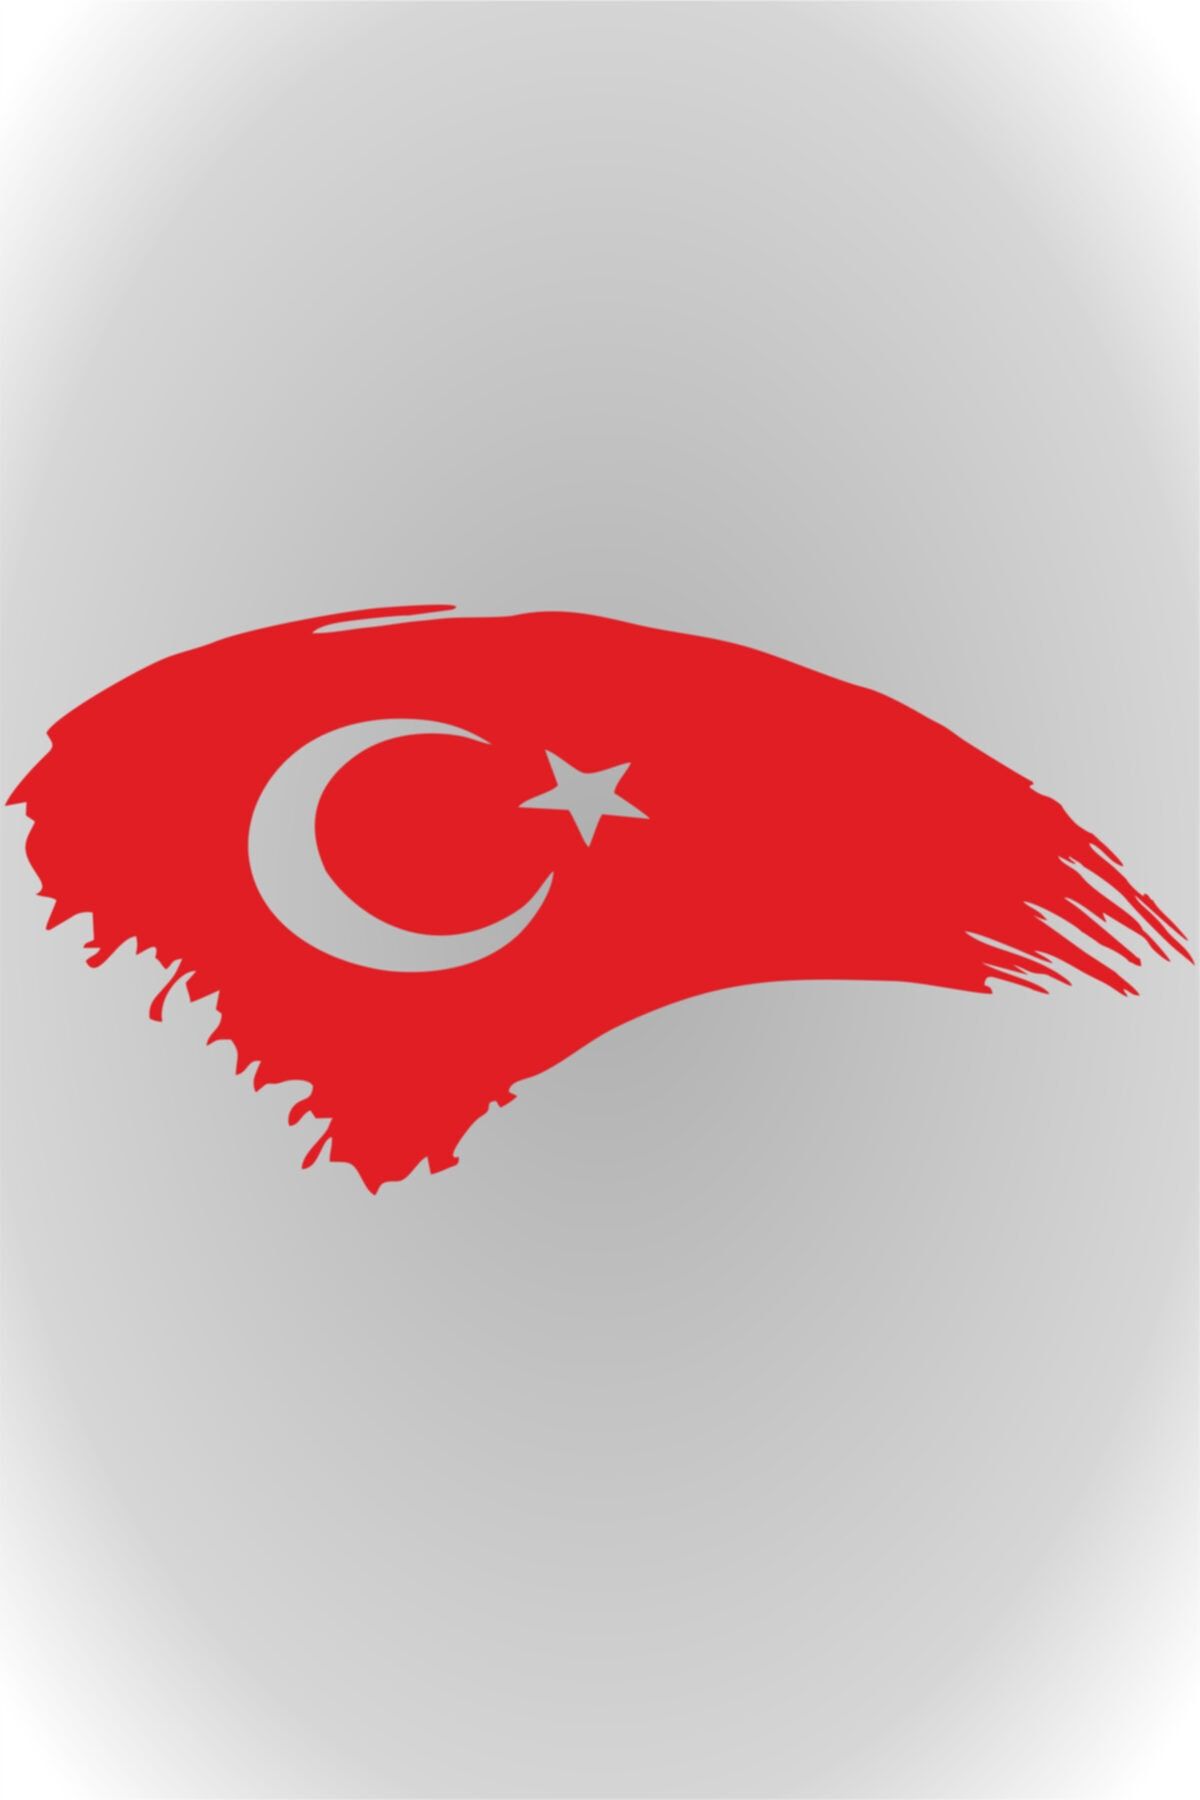 Quart Aksesuar Türk Bayrağı Türkiye Bayrak Sticker Kırmızı 25 X 13 Cm